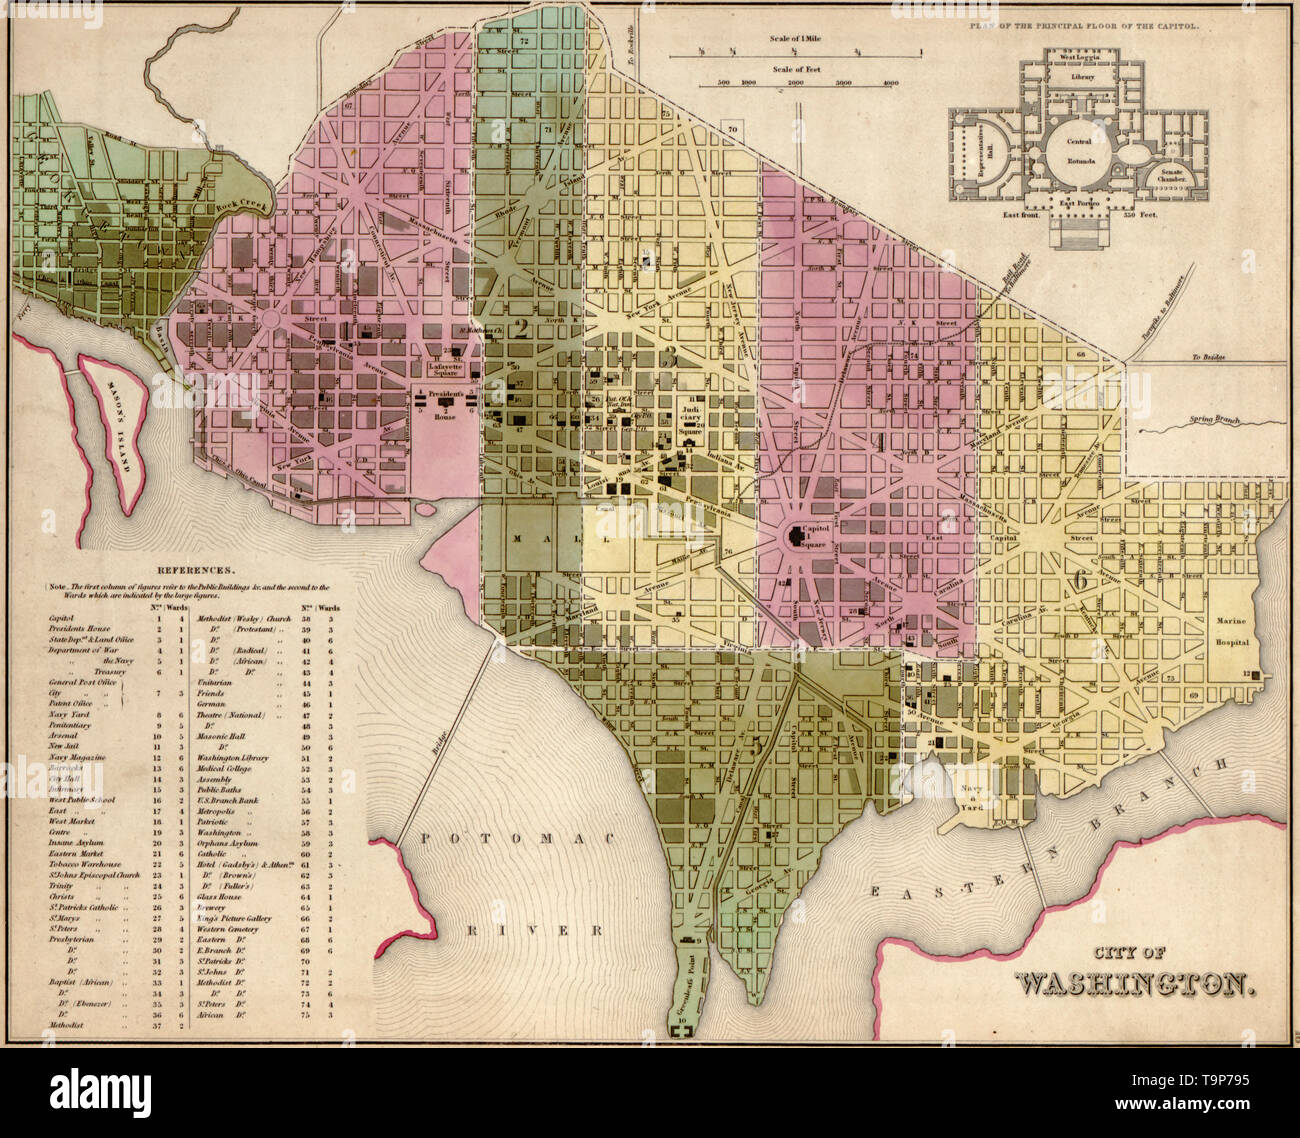 Map of City of Washington DC, 1844 Stock Photo